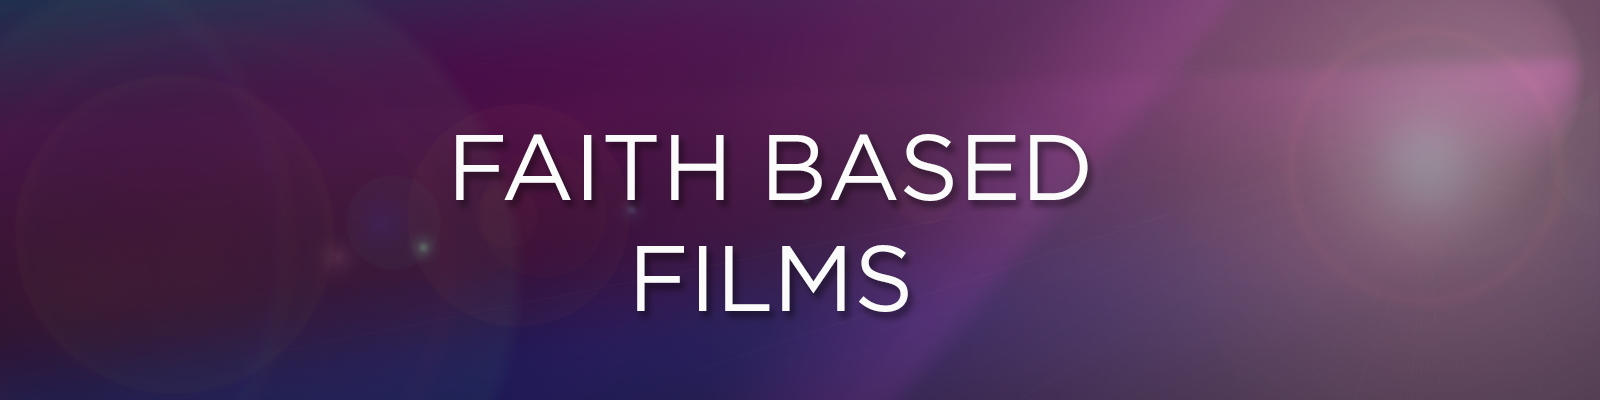 Faith based films